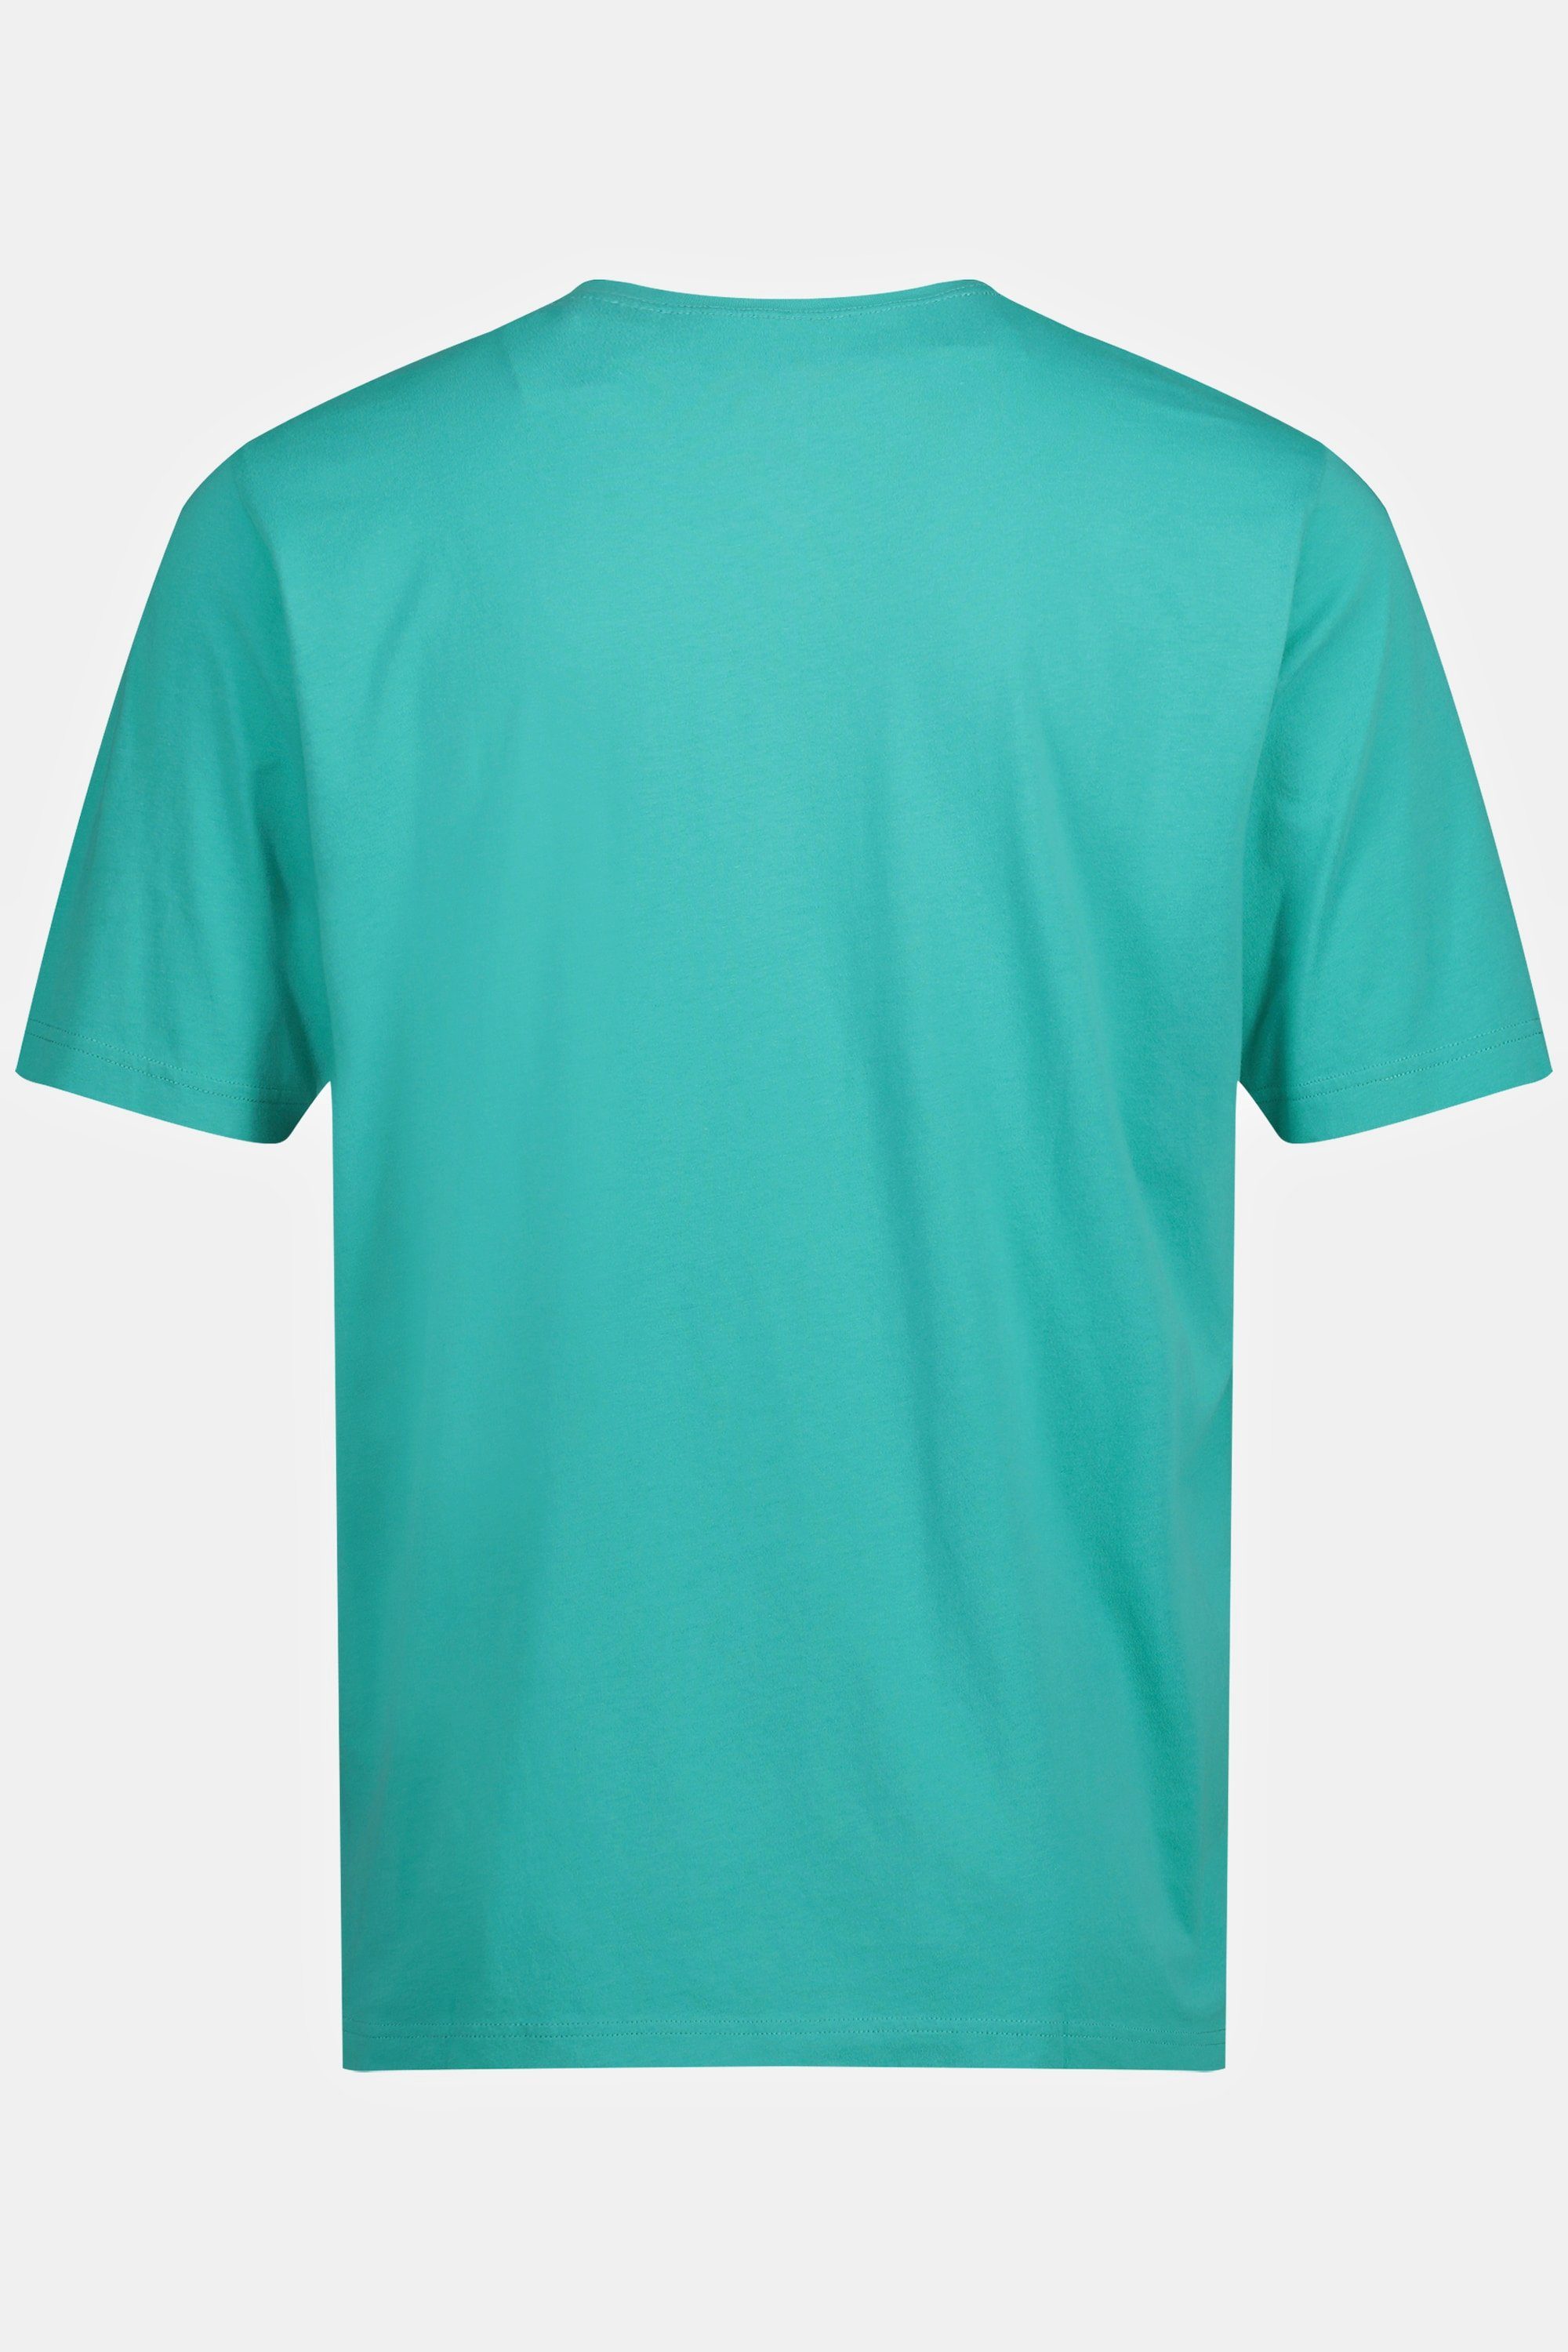 JP1880 T-Shirt karibikgrün helles T-Shirt V-Ausschnitt Basic 8XL bis